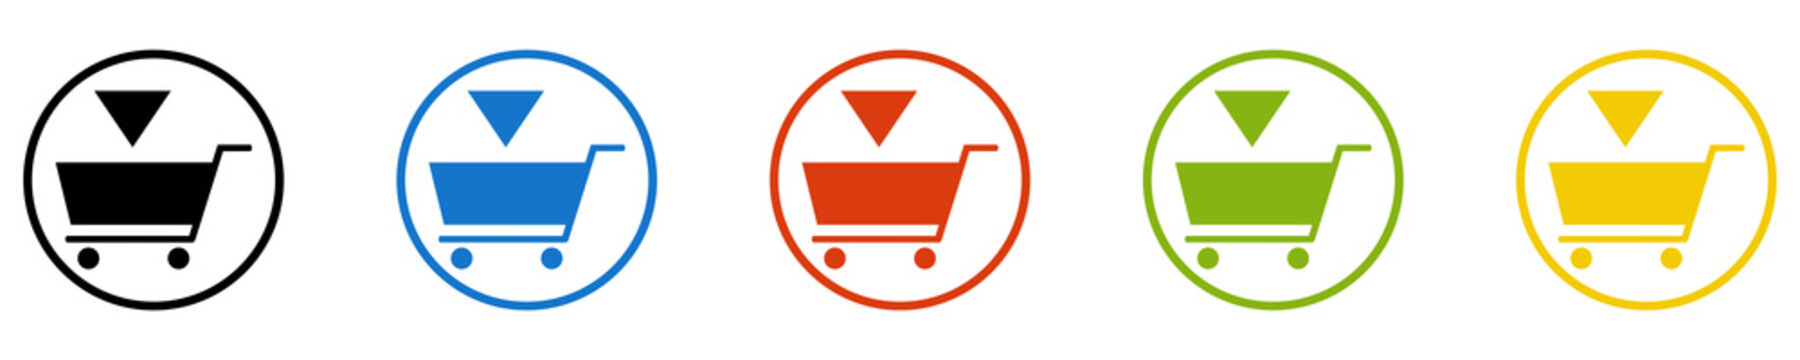 Bunter Banner mit 5 farbigen Icons: Shop, Onlineshop, Bestellen, Kaufen oder in den Warenkorb